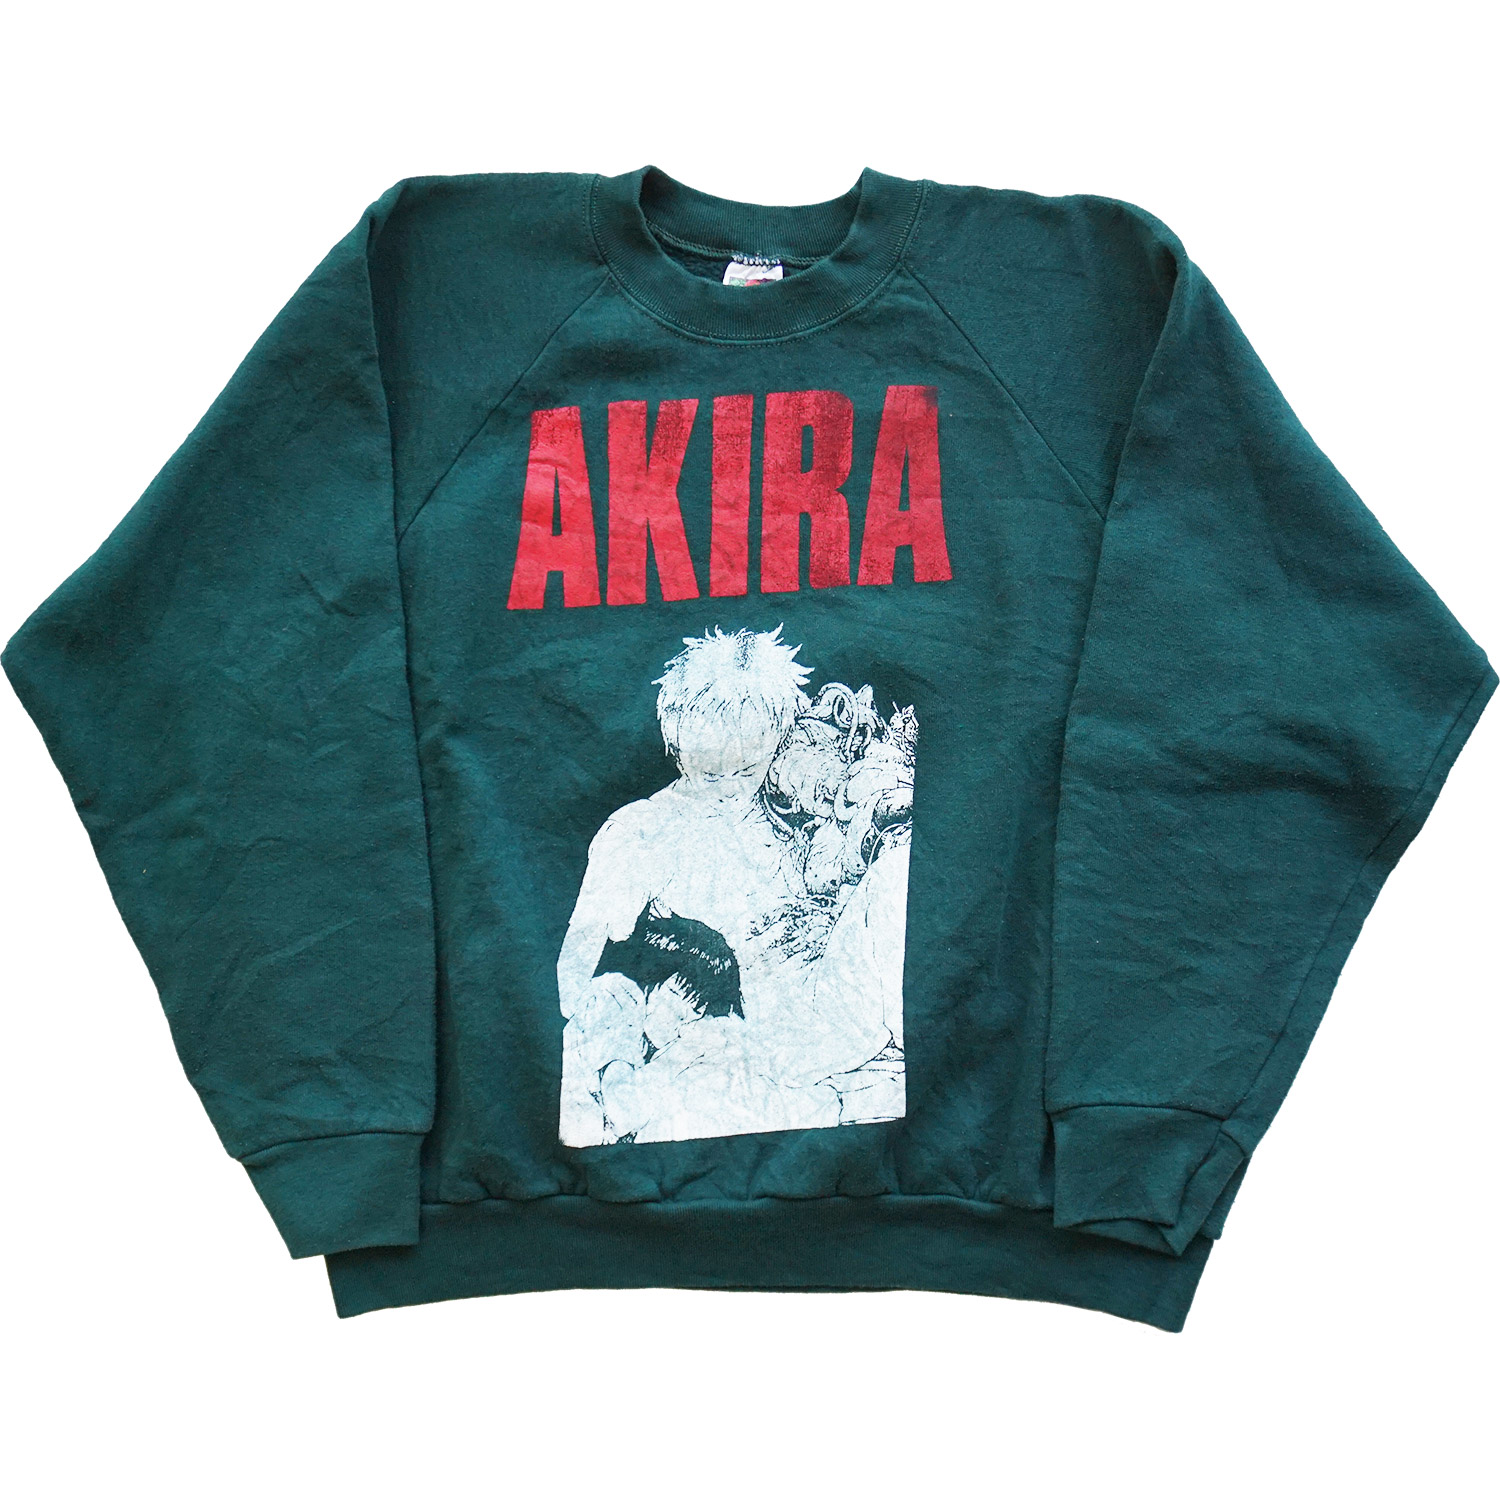 Akira Bootleg Sweatshirt, Front